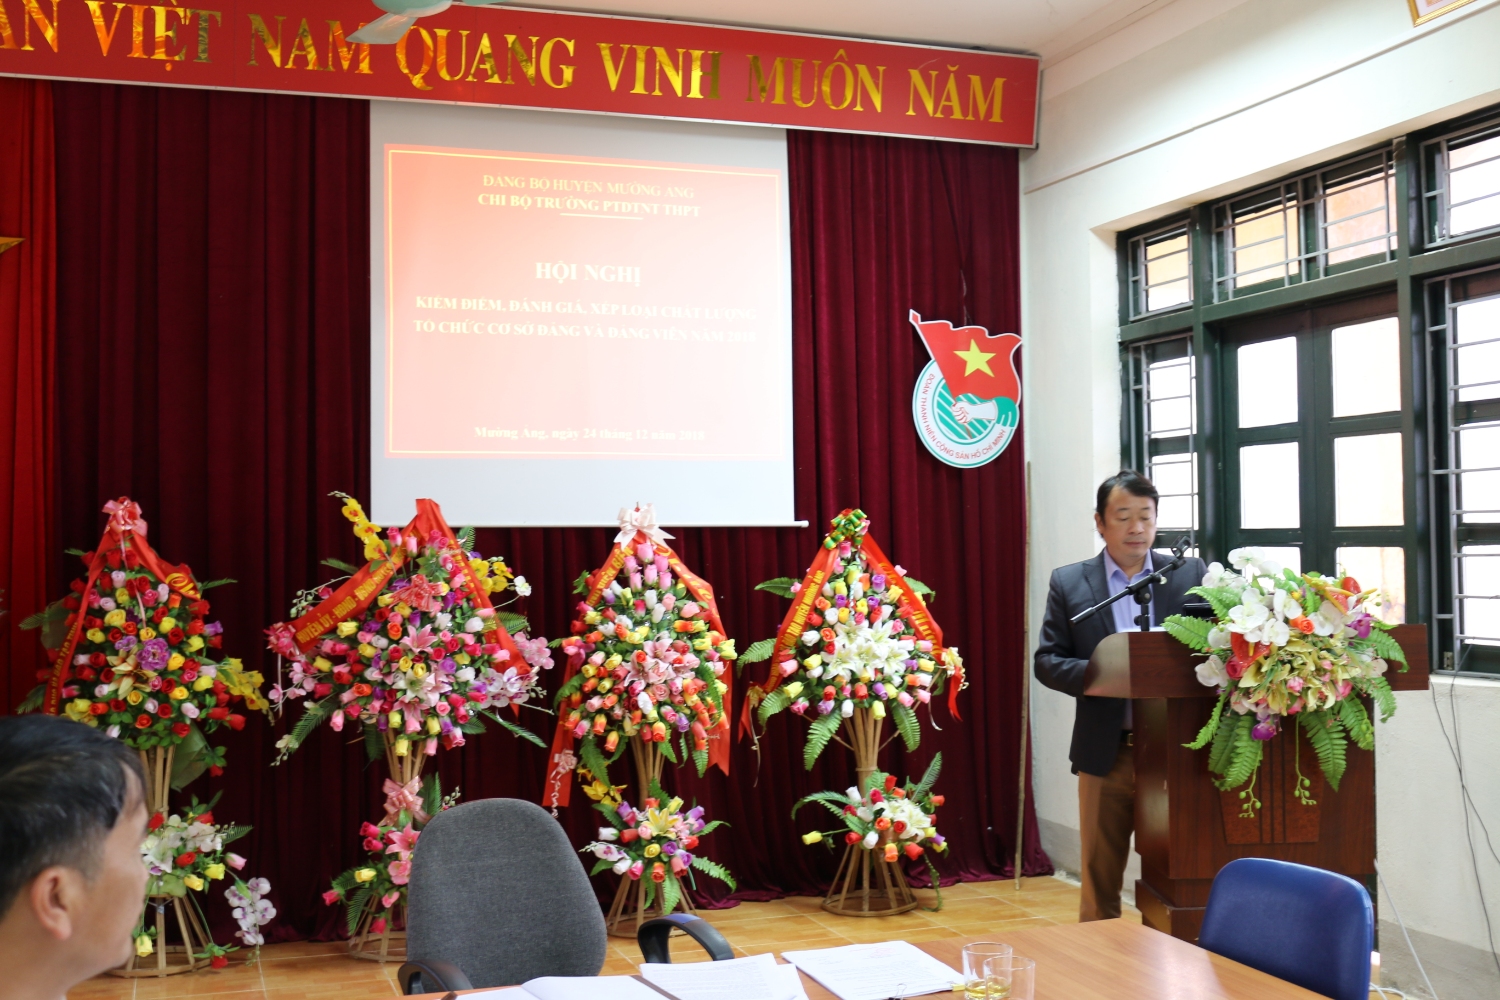 ĐC Cà Văn Minh - Bí thư chi bộ phát biểu khai mạc Hội nghị